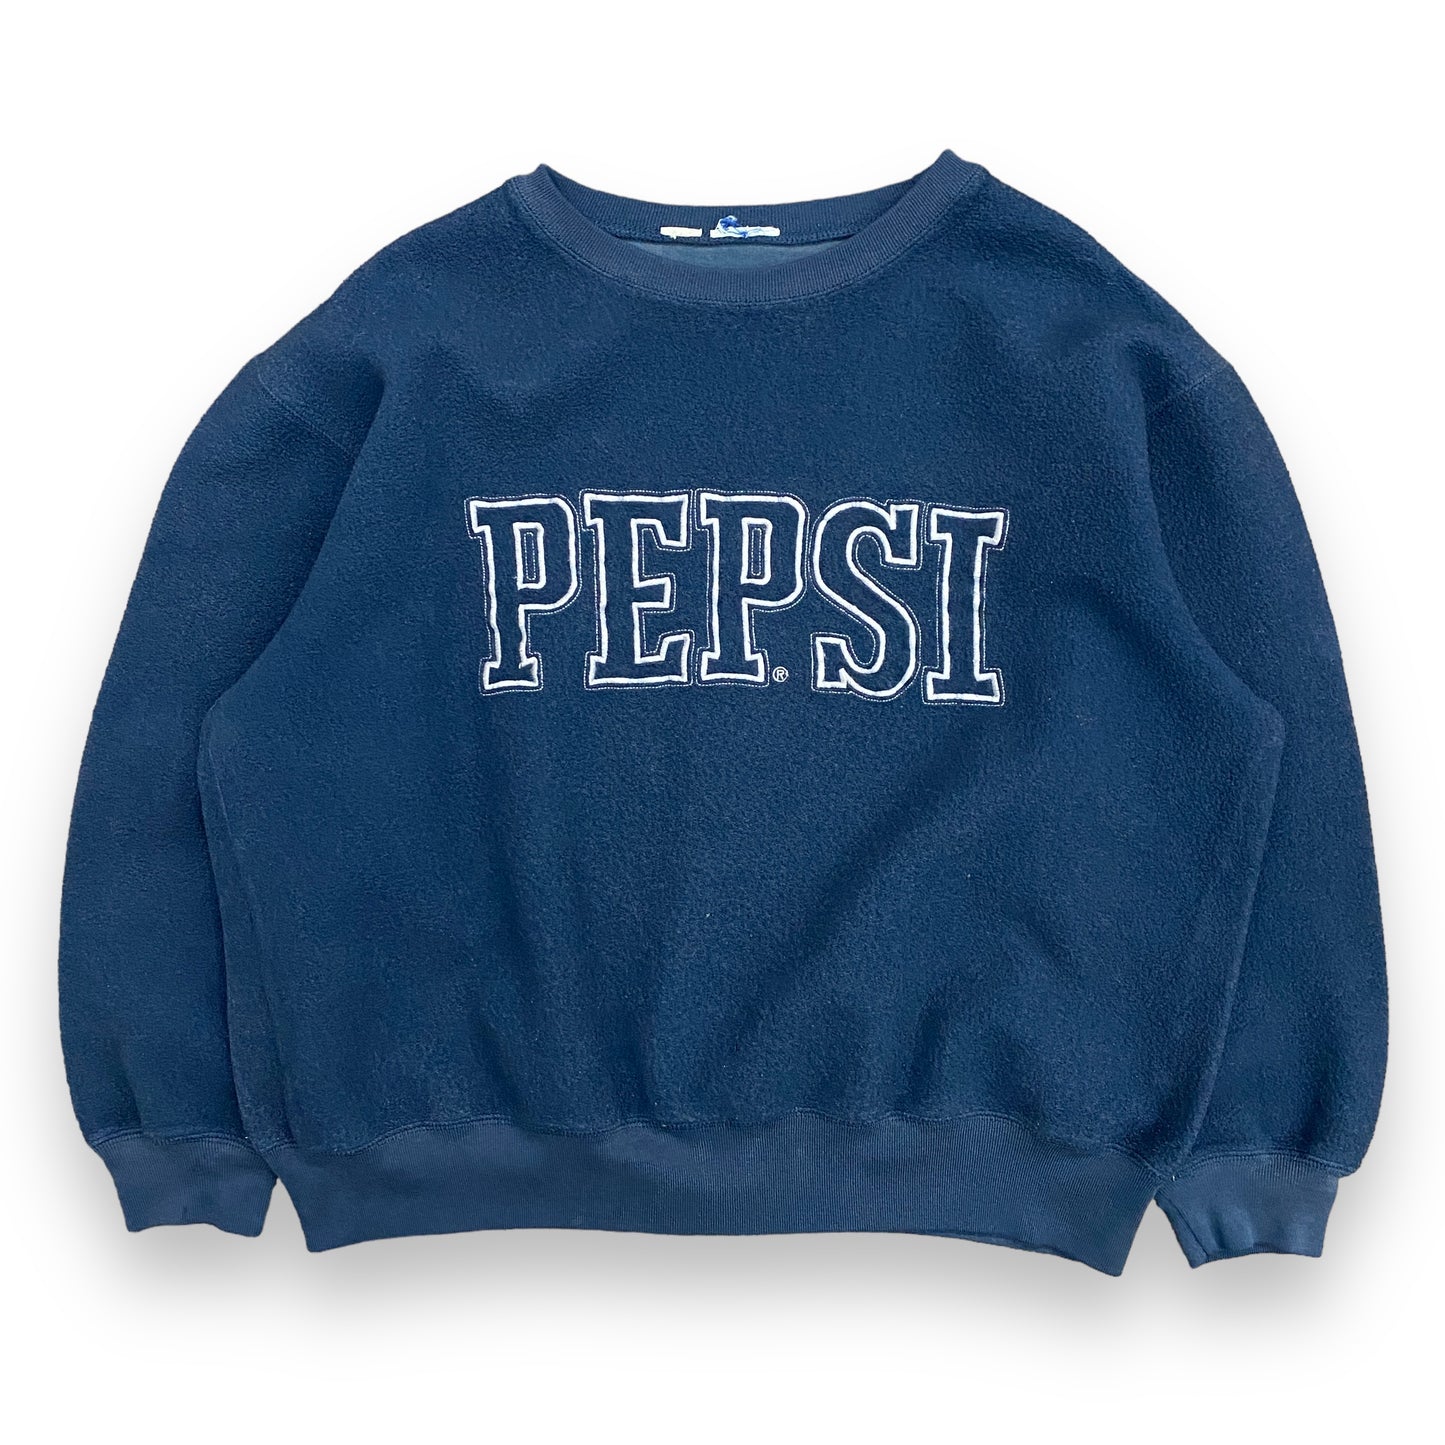 1990s "Pepsi" Navy Blue Fleece Sweatshirt - Size Large